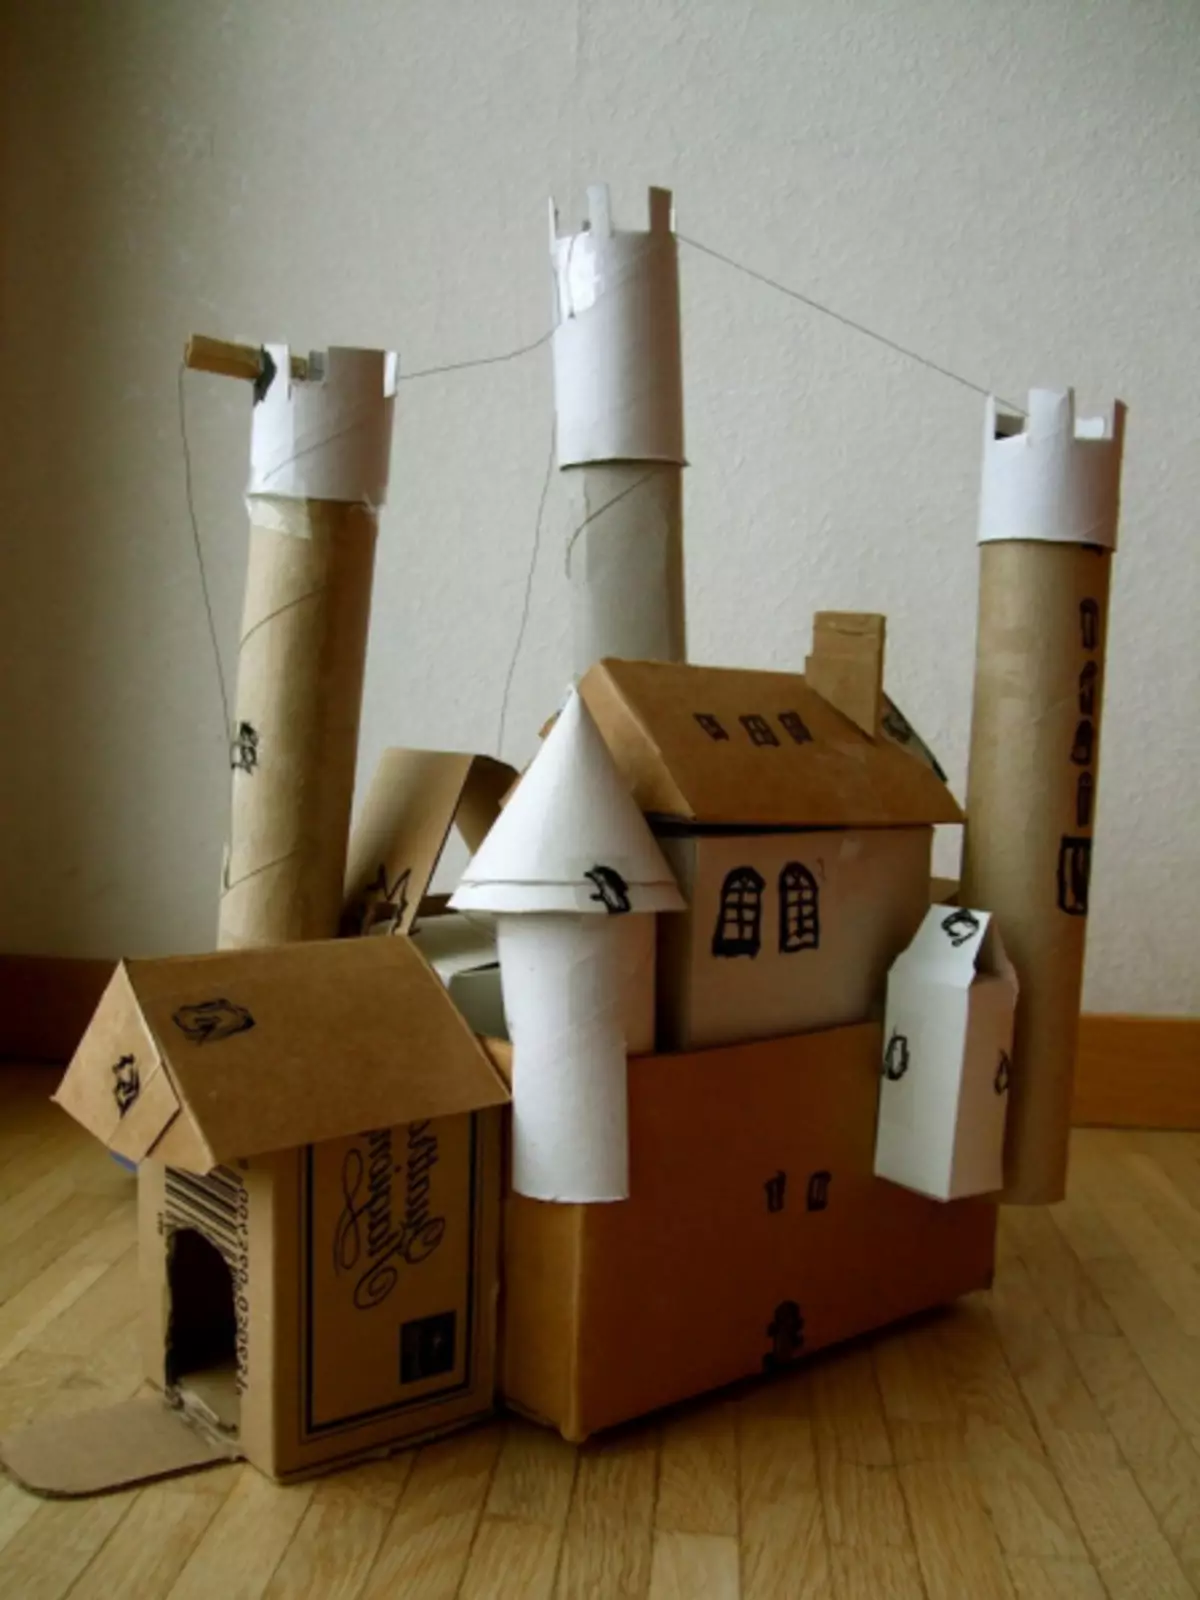 Cajas de cartón: juguetes para niños e ideas para el hogar (39 fotos)